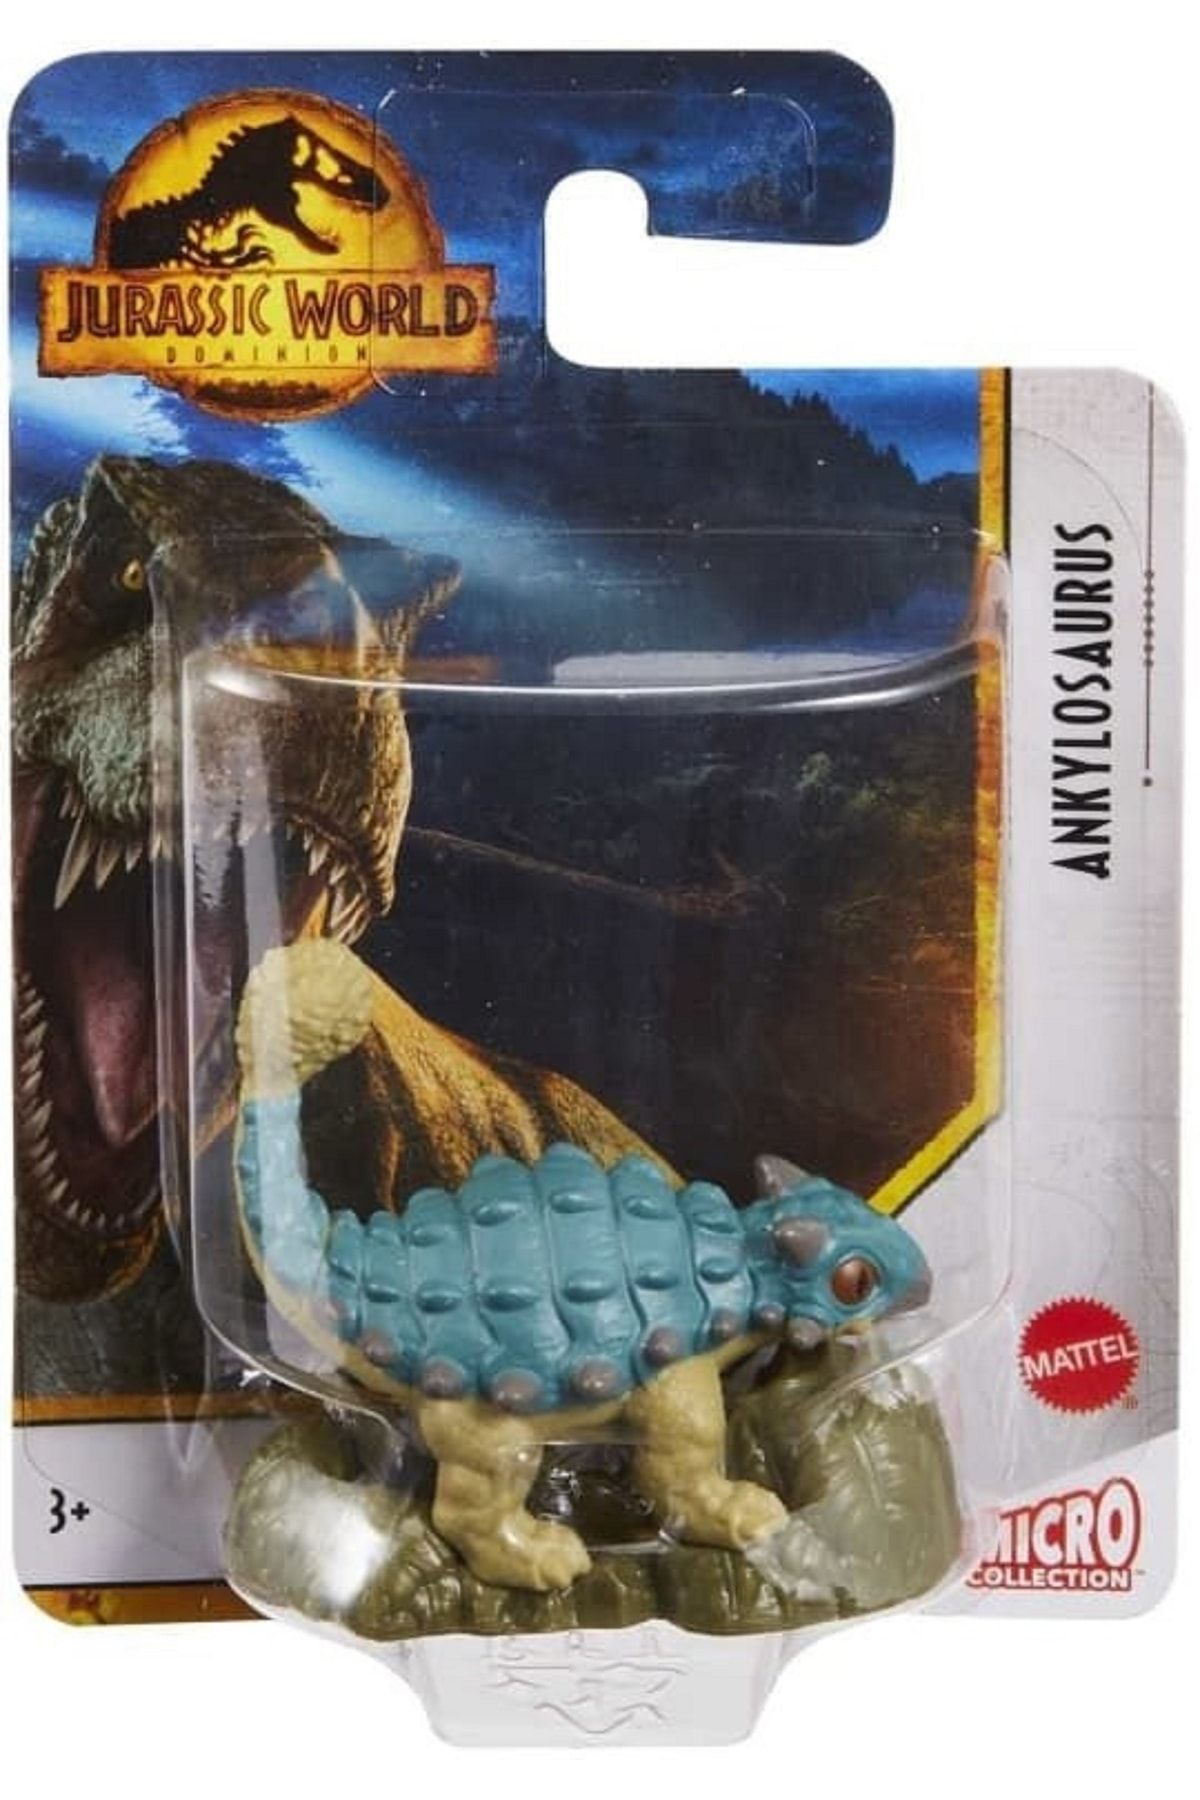 Jurassic World Orijinal Lisanslı Micro Boyut Dinazor Figürü Oyuncak Figür Oyuncağı Orjinal 5cm